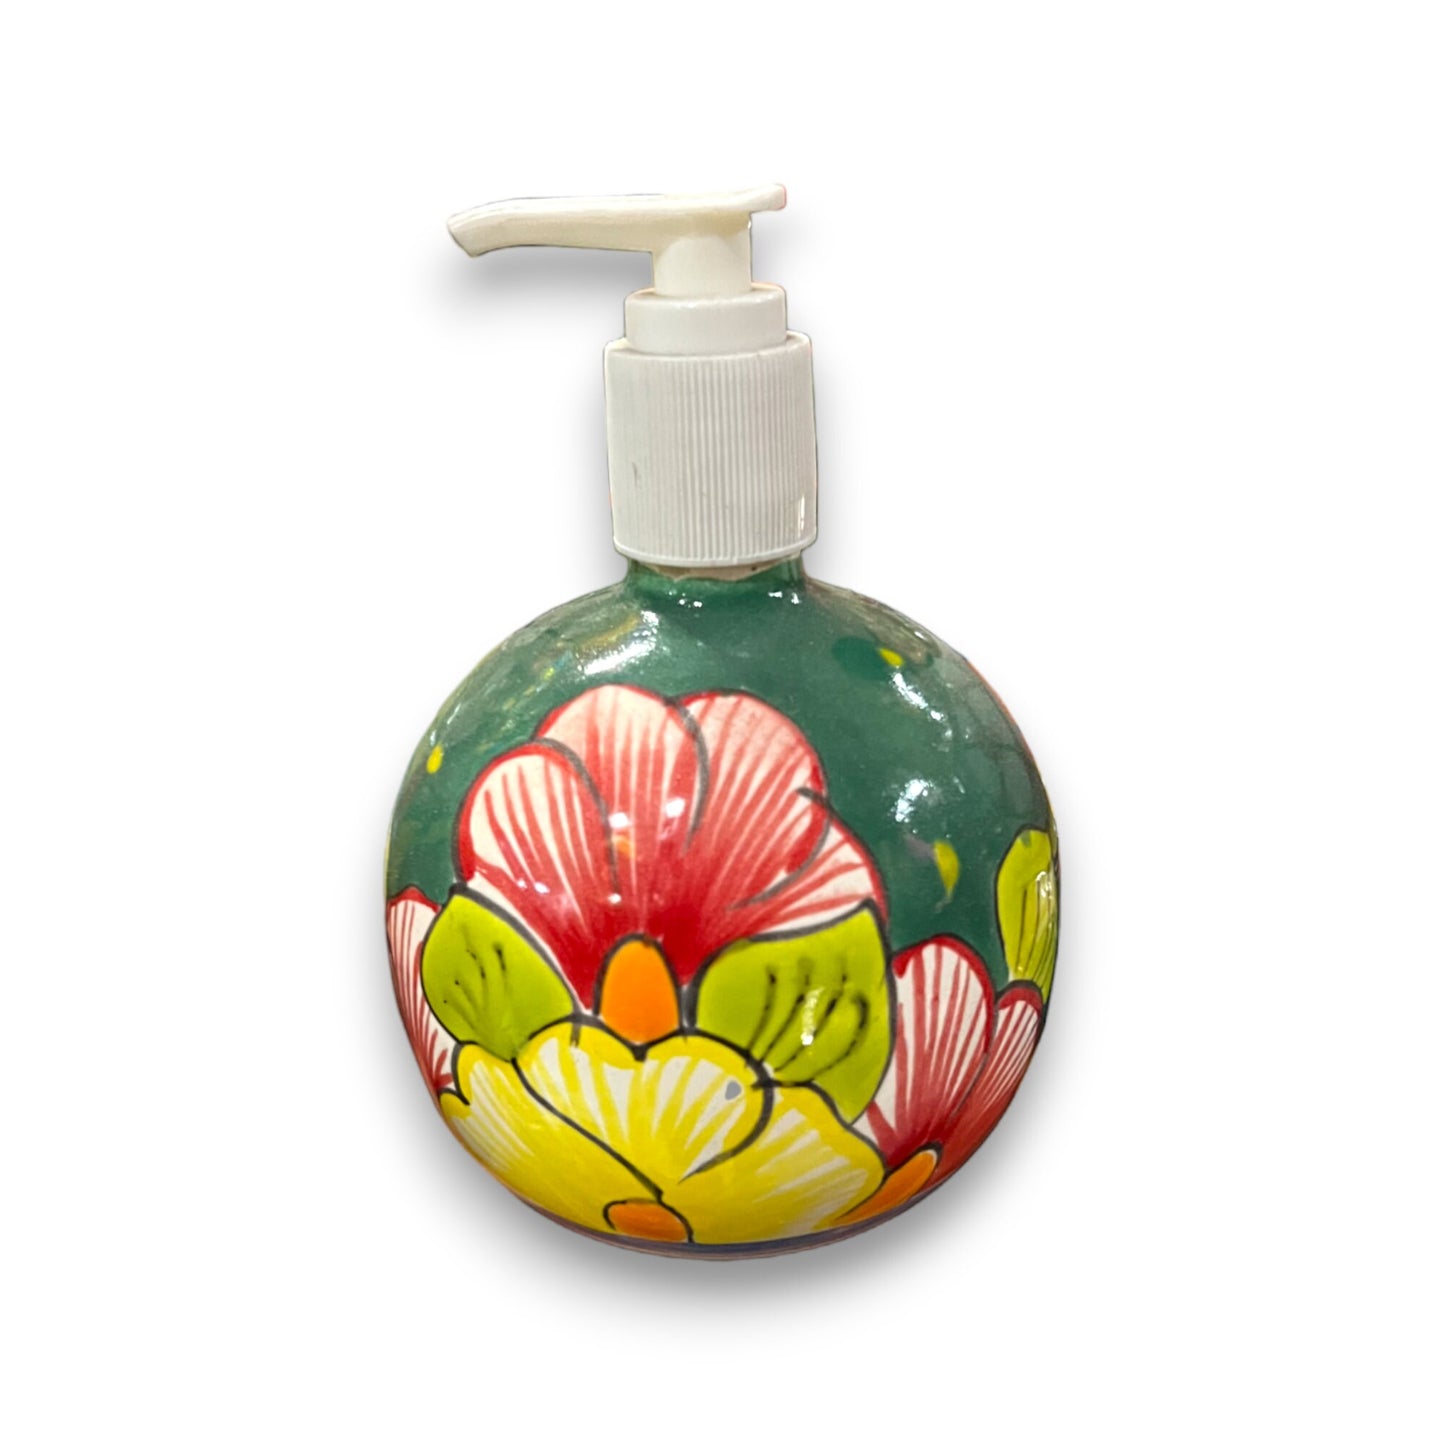 Mexican Talavera Soap Dispenser | Colorful Ceramic Bathroom Decor